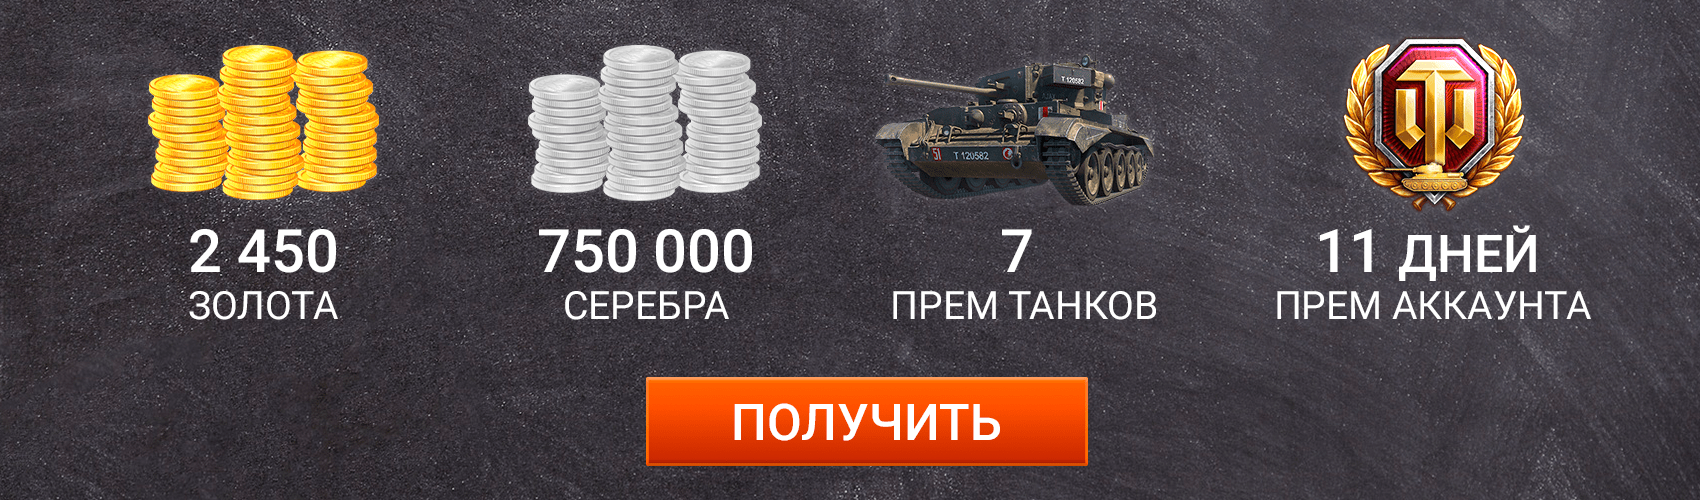 Как написать письмо разработчикам world of tanks | gogogame.ru